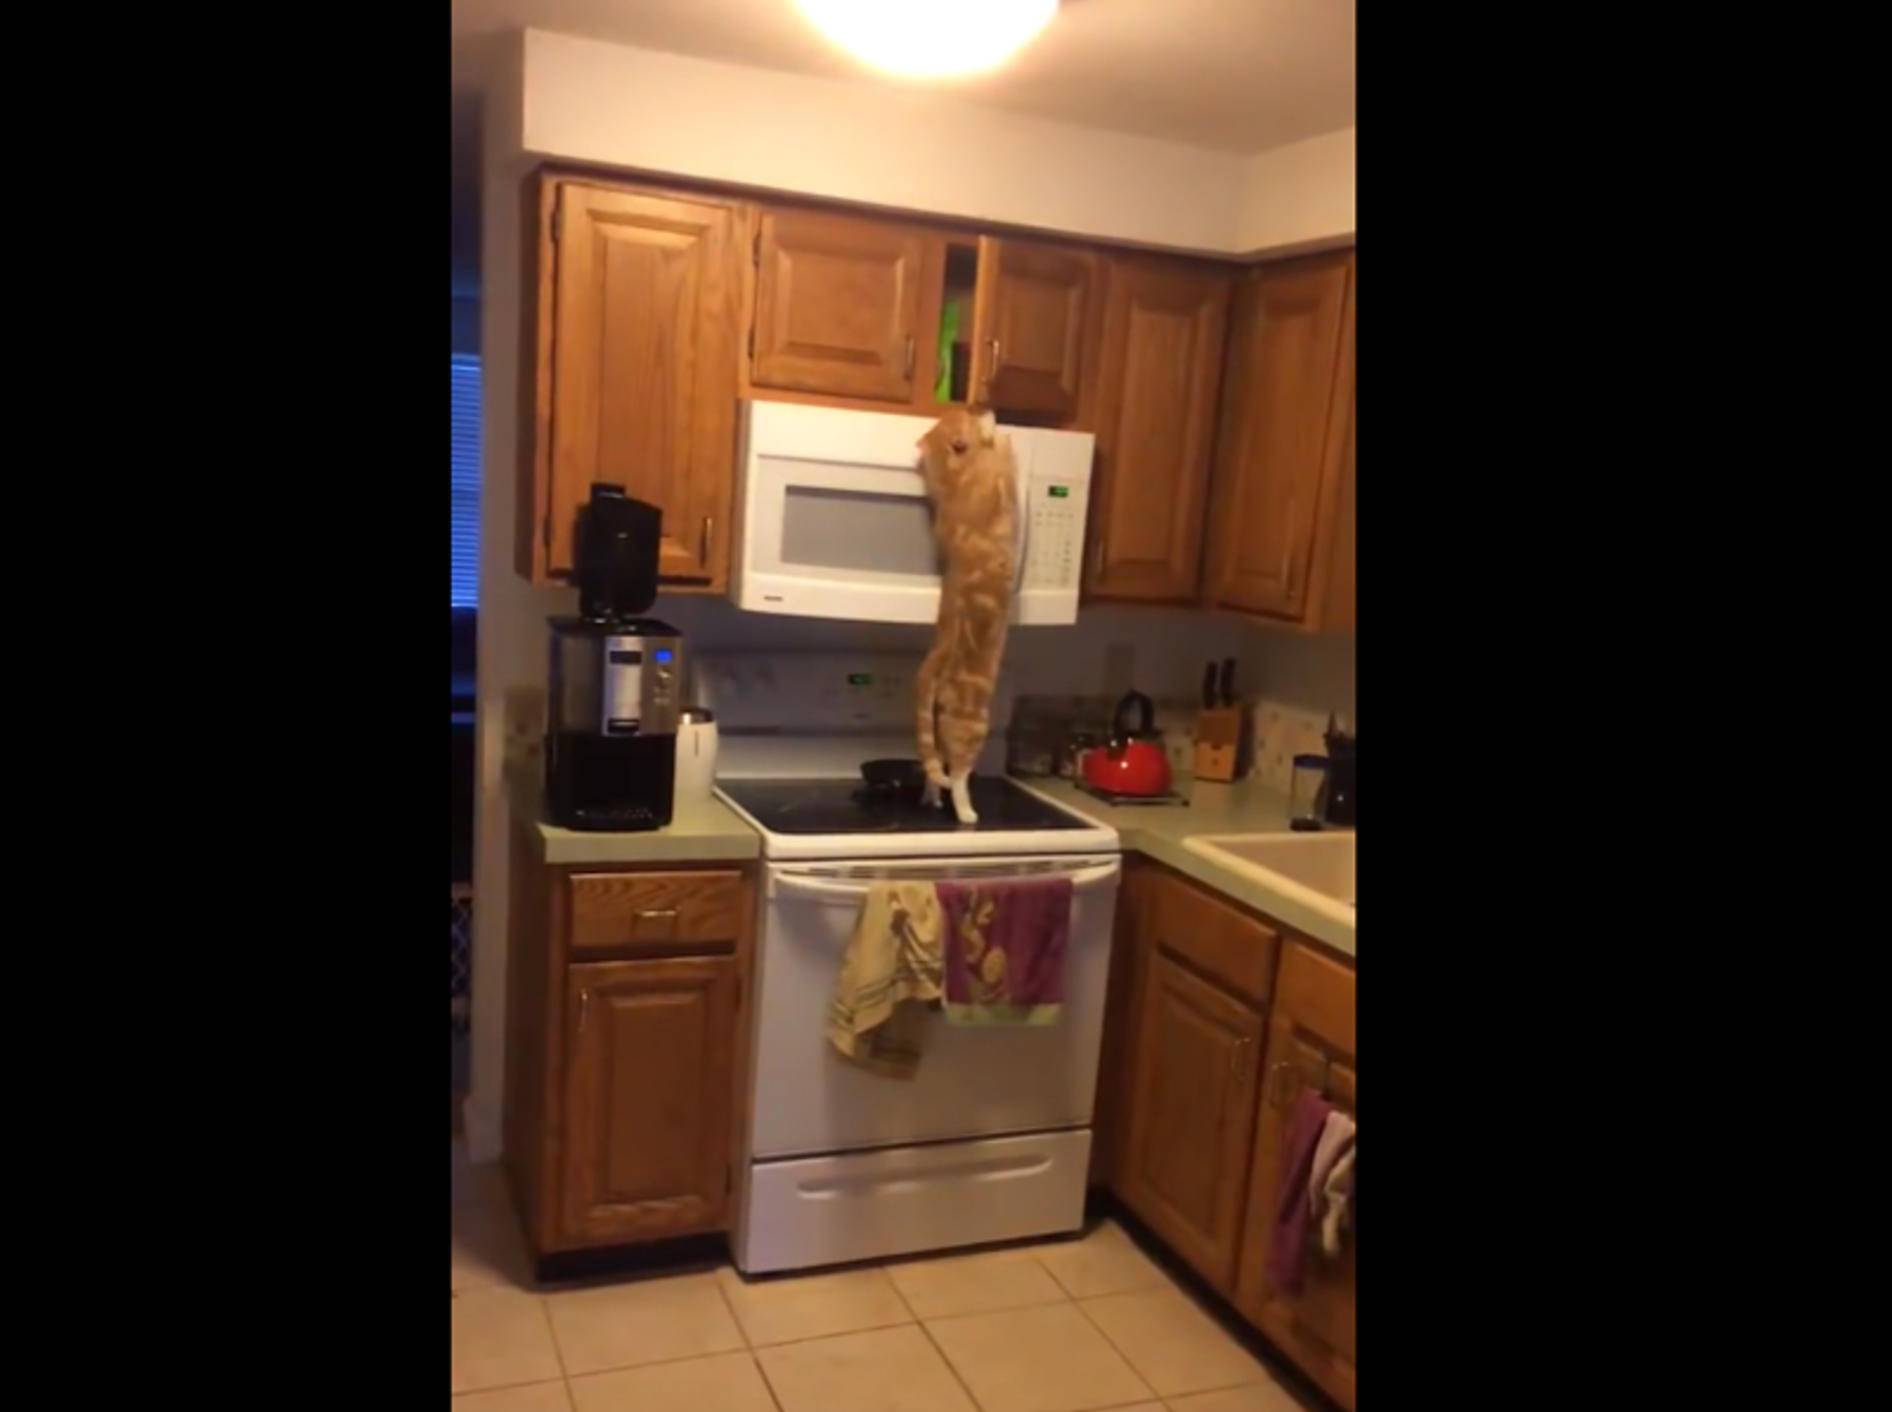 Schlaue Katze weiß, wo die Leckerlis versteckt sind – YouTube / Totally Awesome